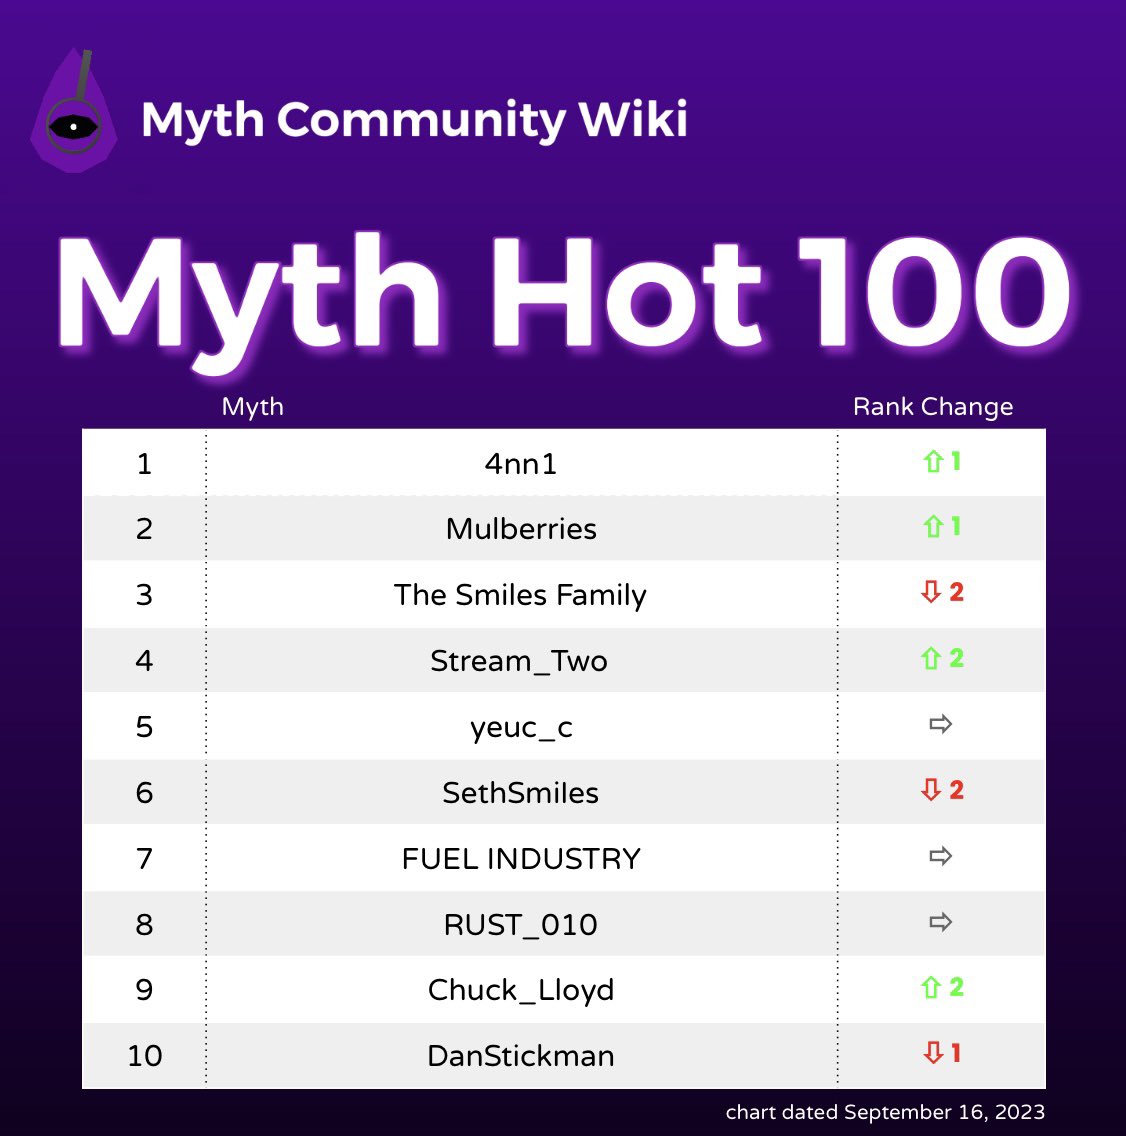 2021 The 10 Kings Myth Oscars, Myth Community Wiki